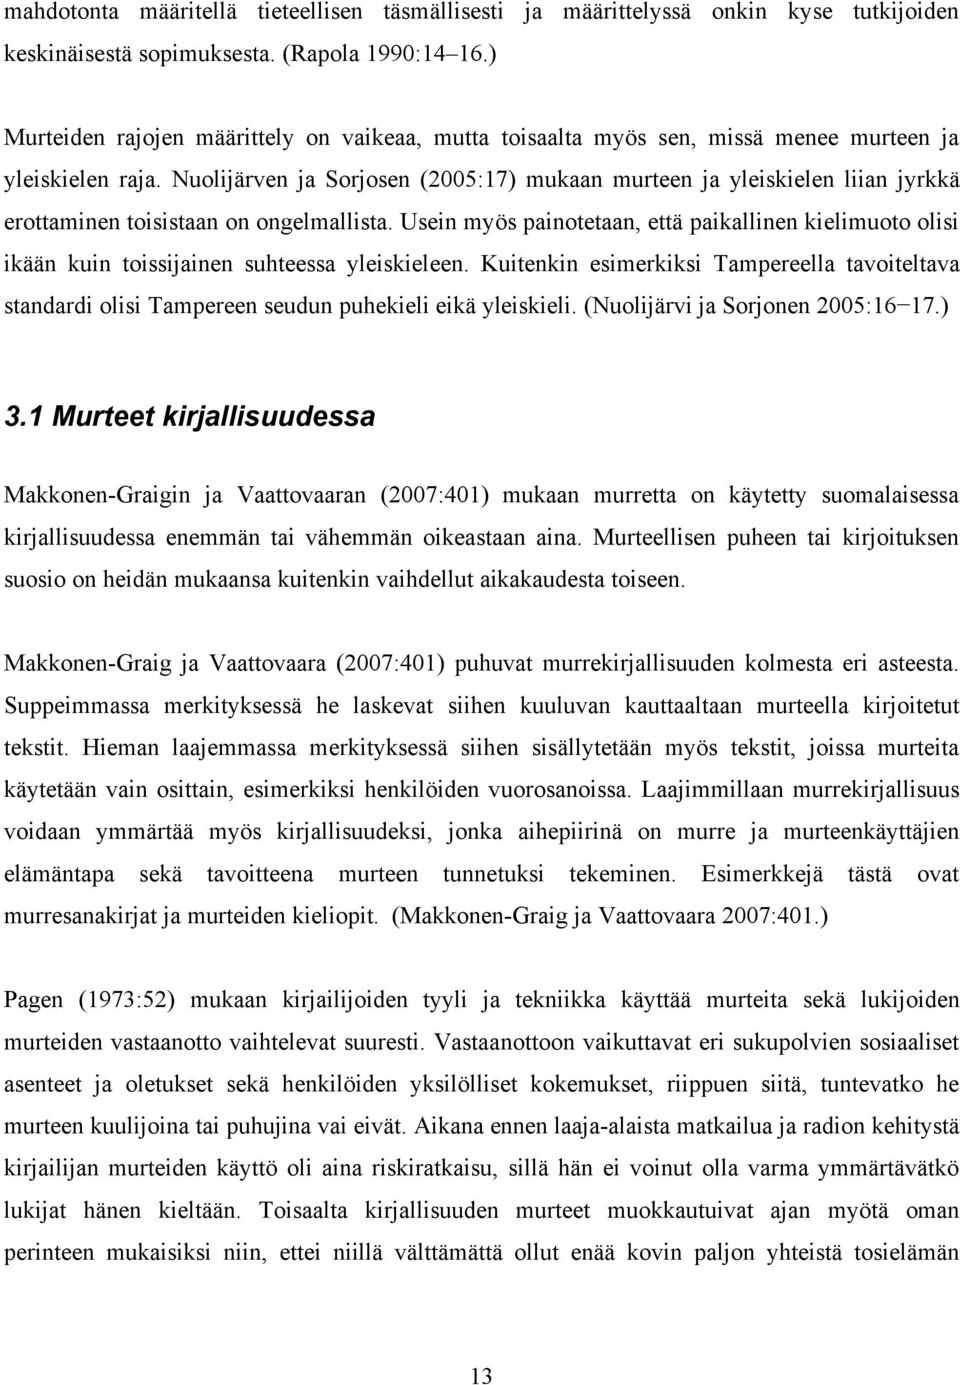 Nuolijärven ja Sorjosen (2005:17) mukaan murteen ja yleiskielen liian jyrkkä erottaminen toisistaan on ongelmallista.